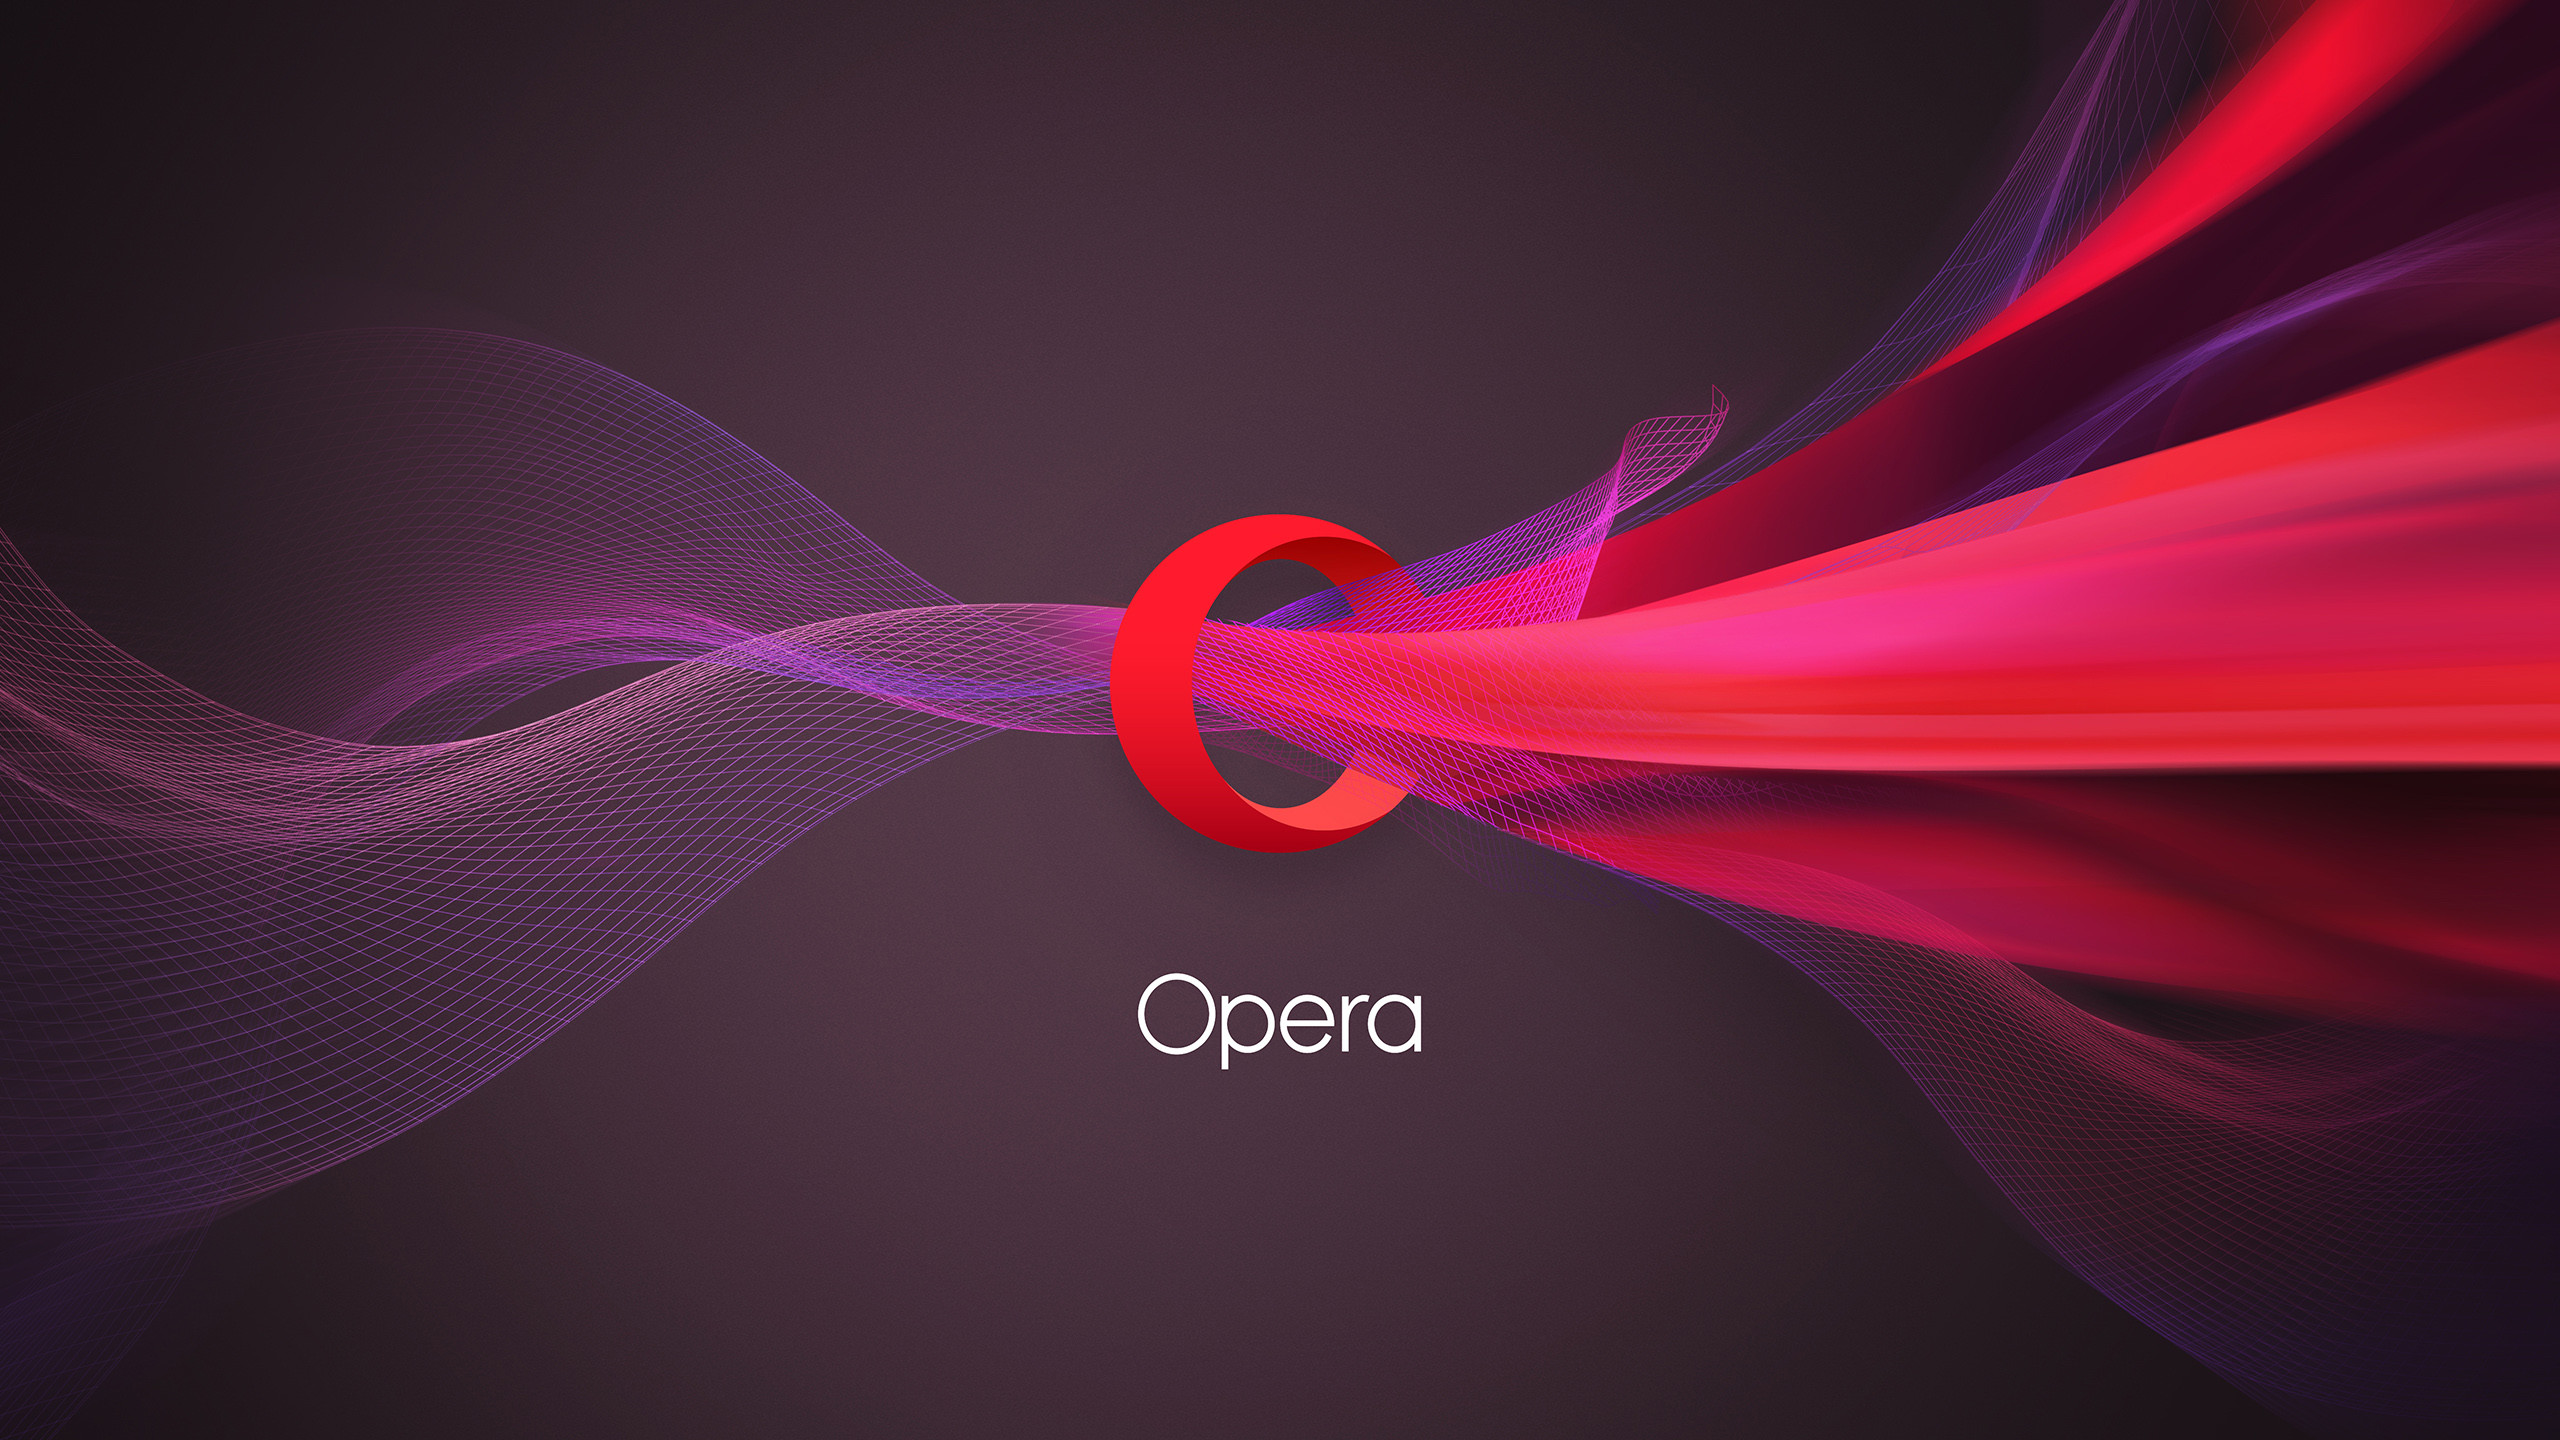 2560x1440 Full size GroÃansicht: 2560 Ã 1440px Â· vorhergehendes Bild nÃ¤chstes Bild.  Opera Logo Wallpaper